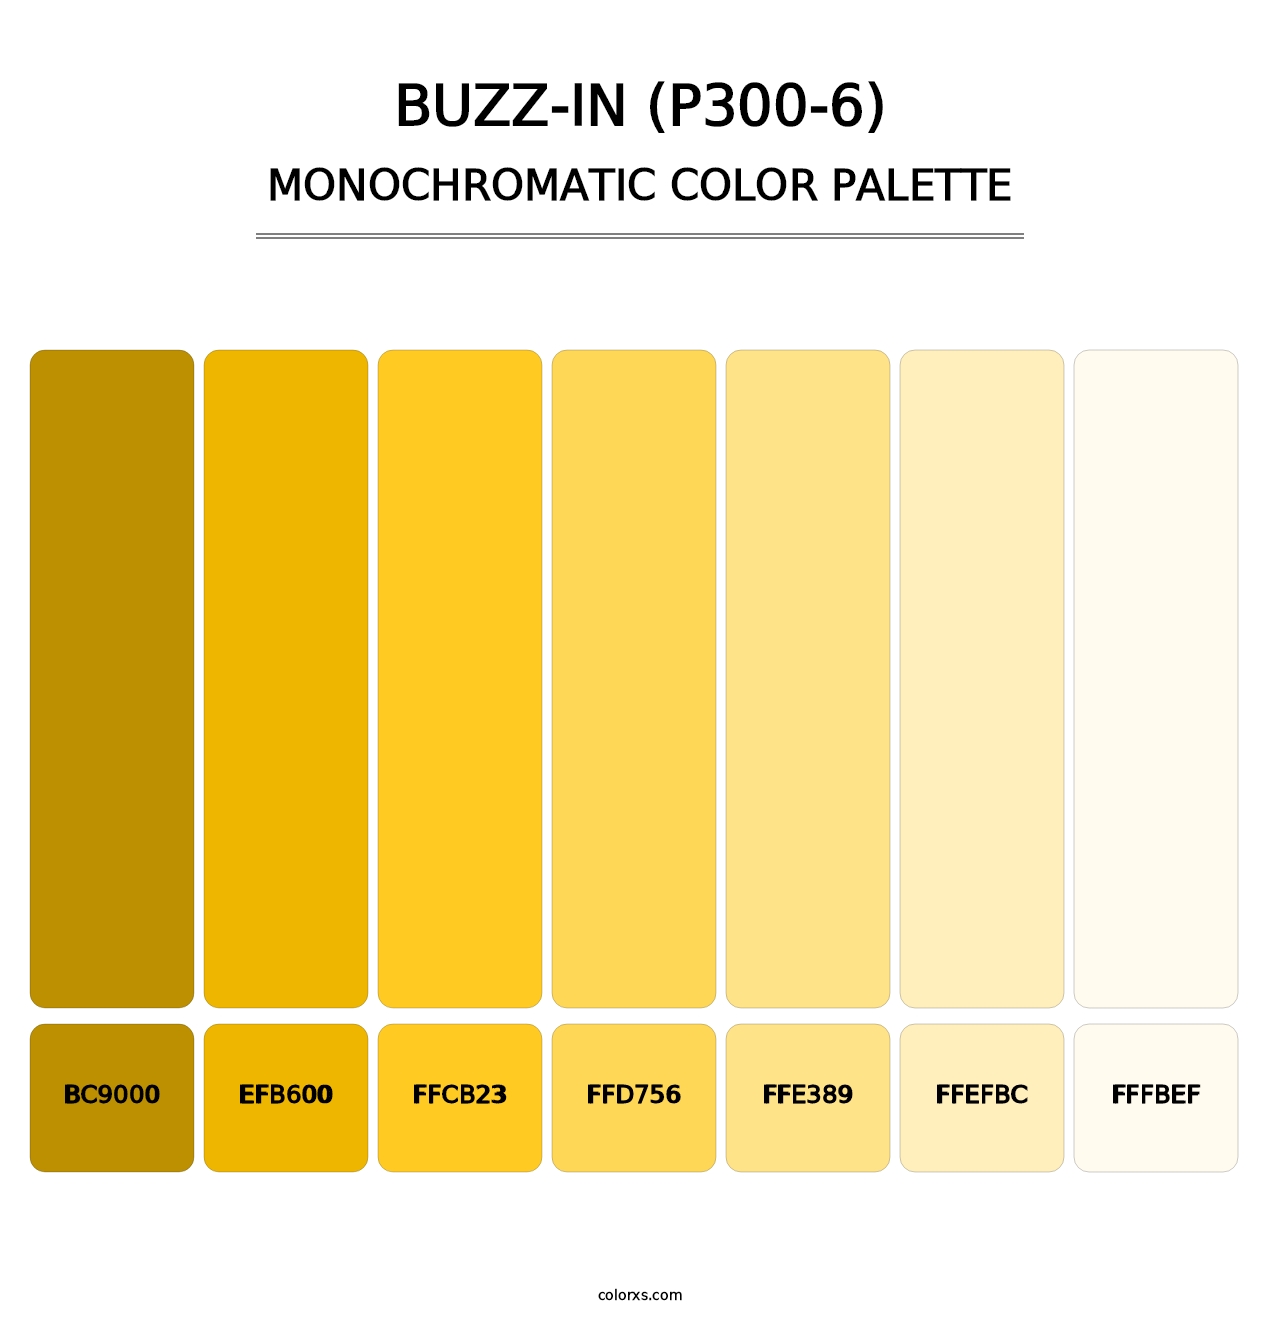 Buzz-In (P300-6) - Monochromatic Color Palette